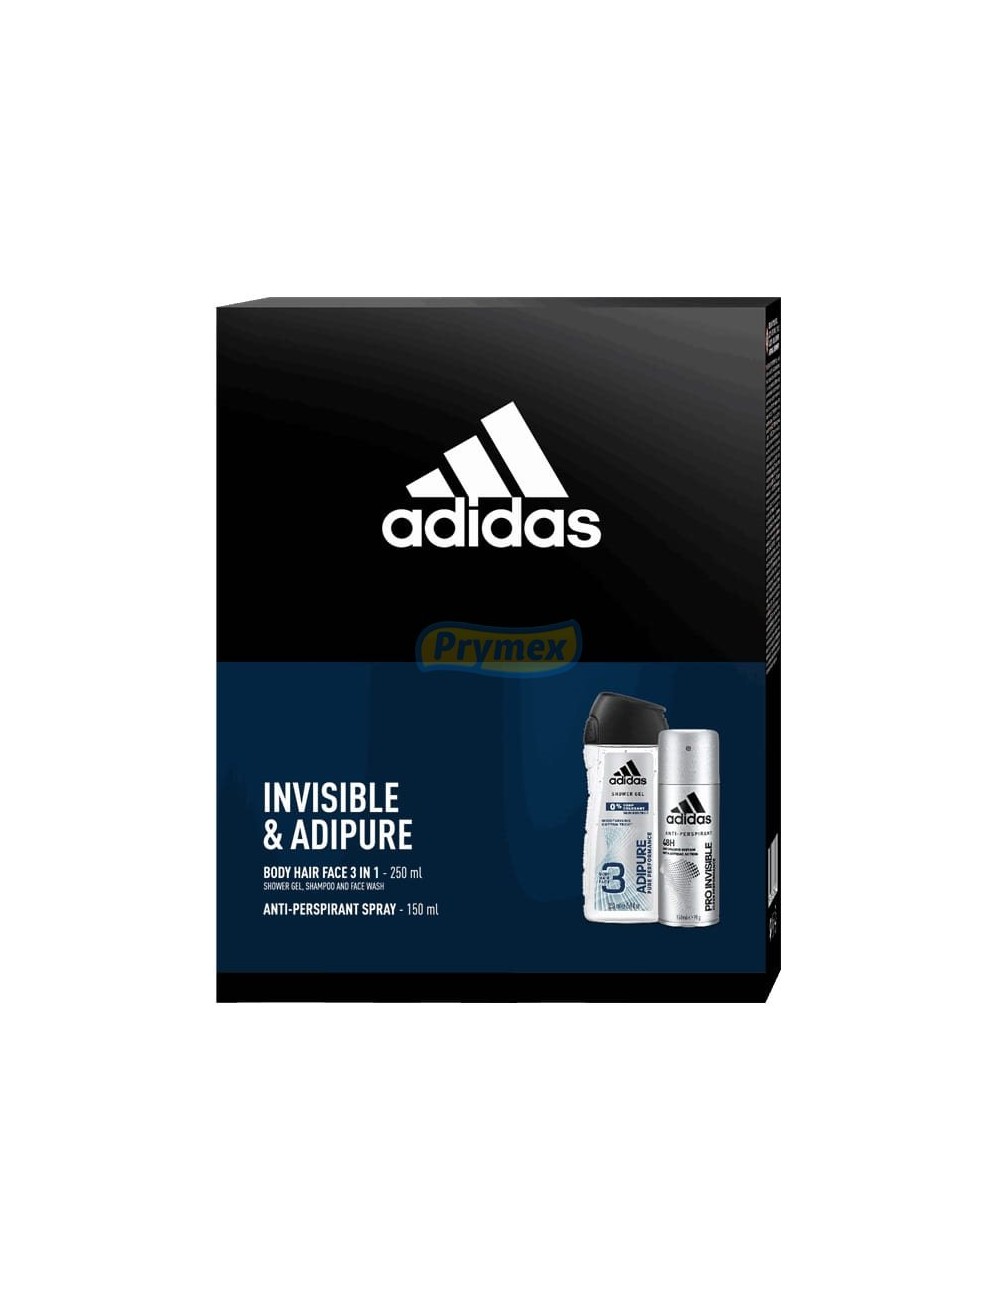 Adidas Zestaw dla Mężczyzn Invisible & Adipure – Żel pod Prysznic 250 ml + Antyperspirant Spray 150 ml